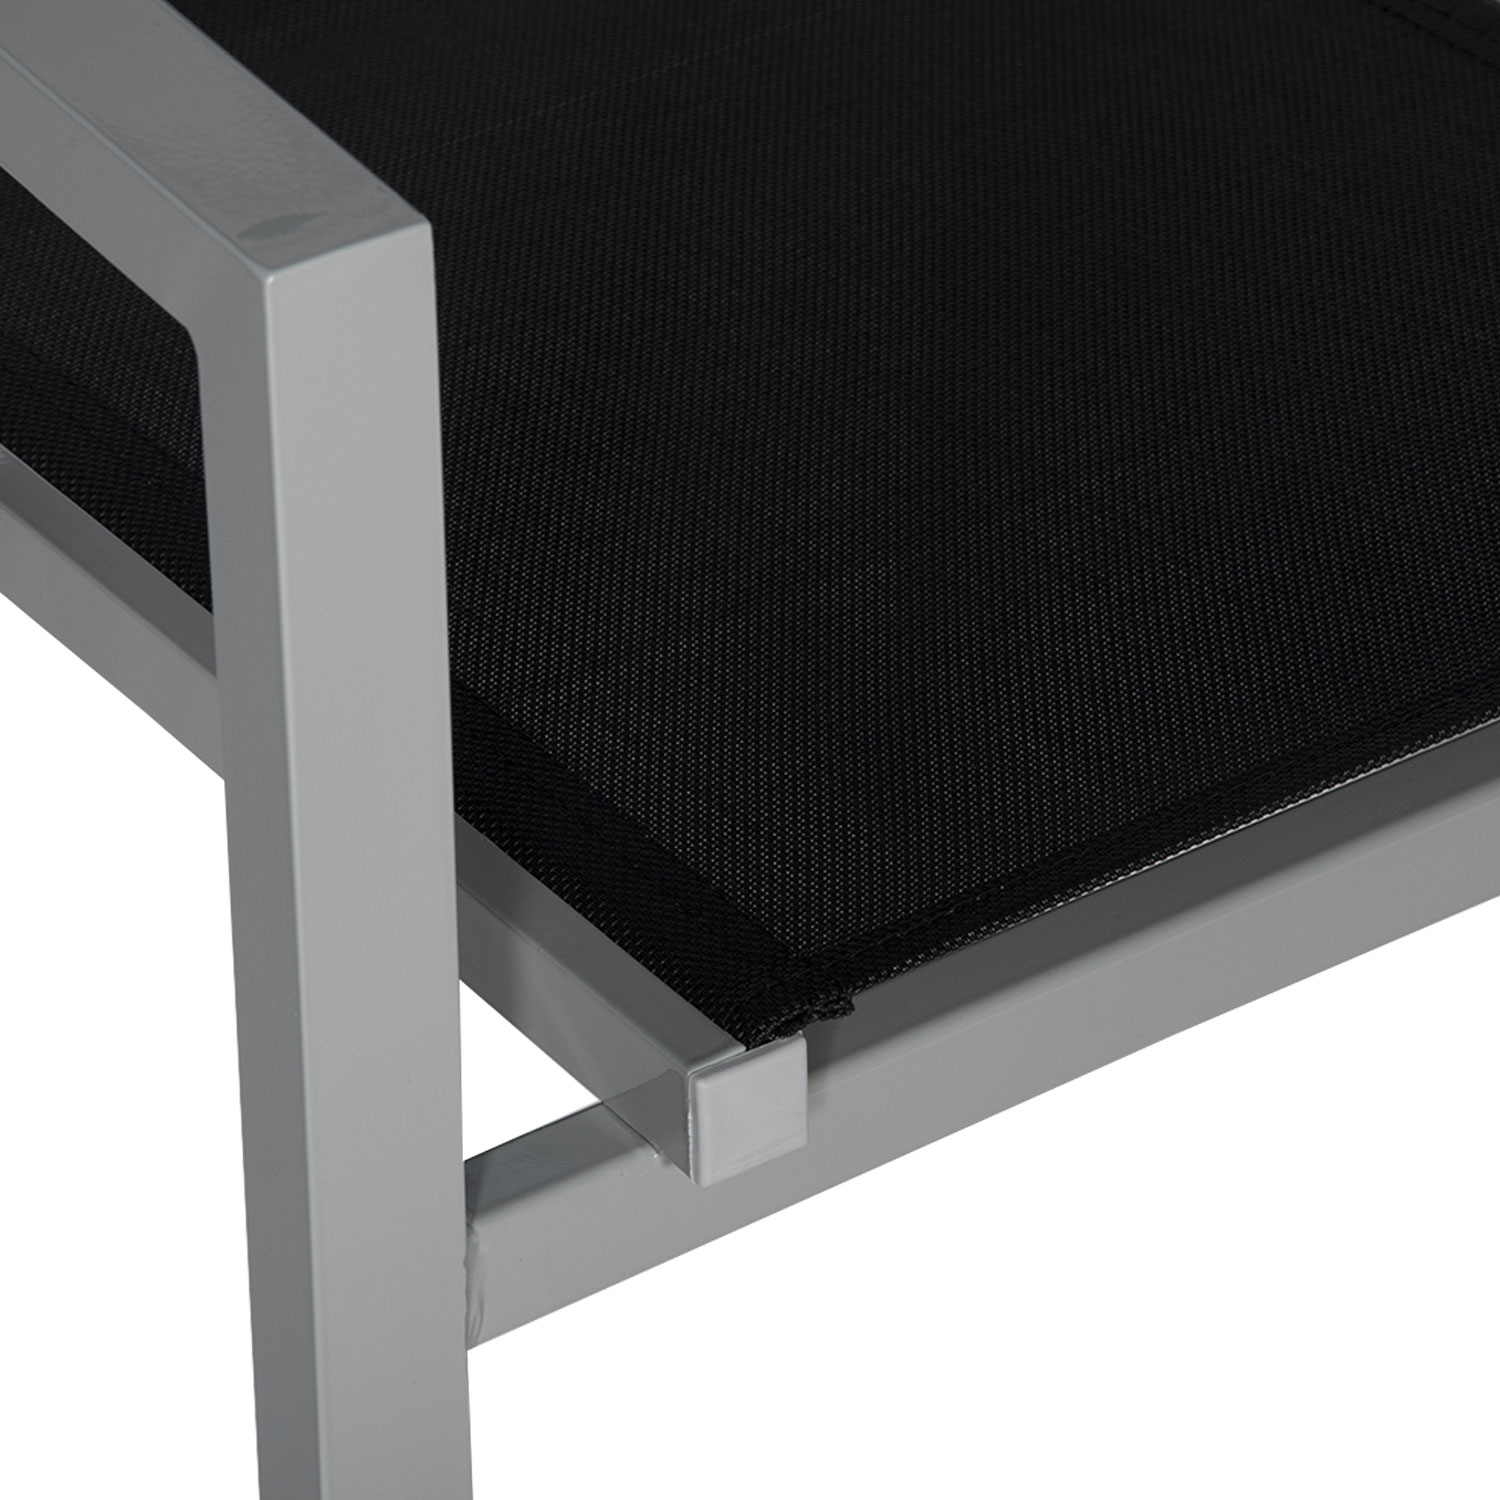 Set di 8 sedie in alluminio grigio - textilene nero